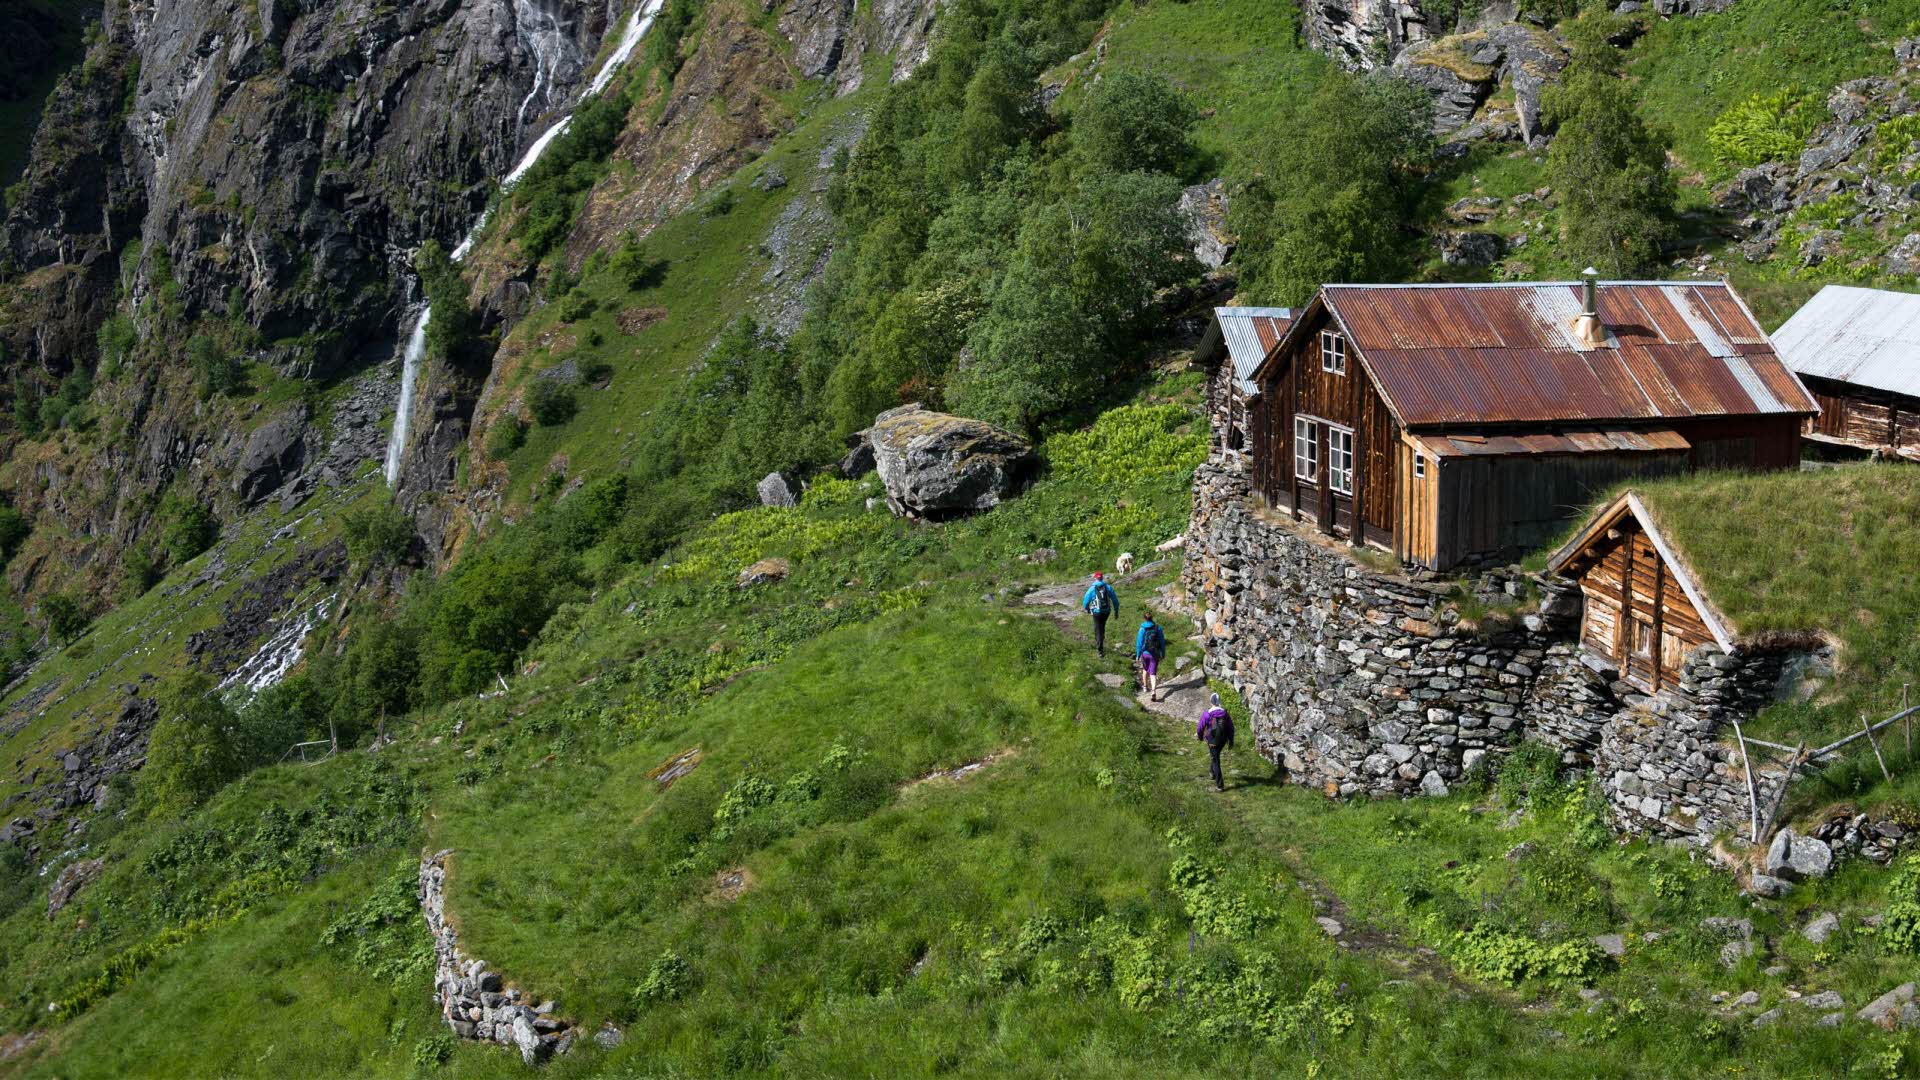 人们在去瀑布的路上，路过艾于兰达林 (Aurlandsdalen) 山谷中辛哈尔海姆 (Sinjarheim) 的老房子